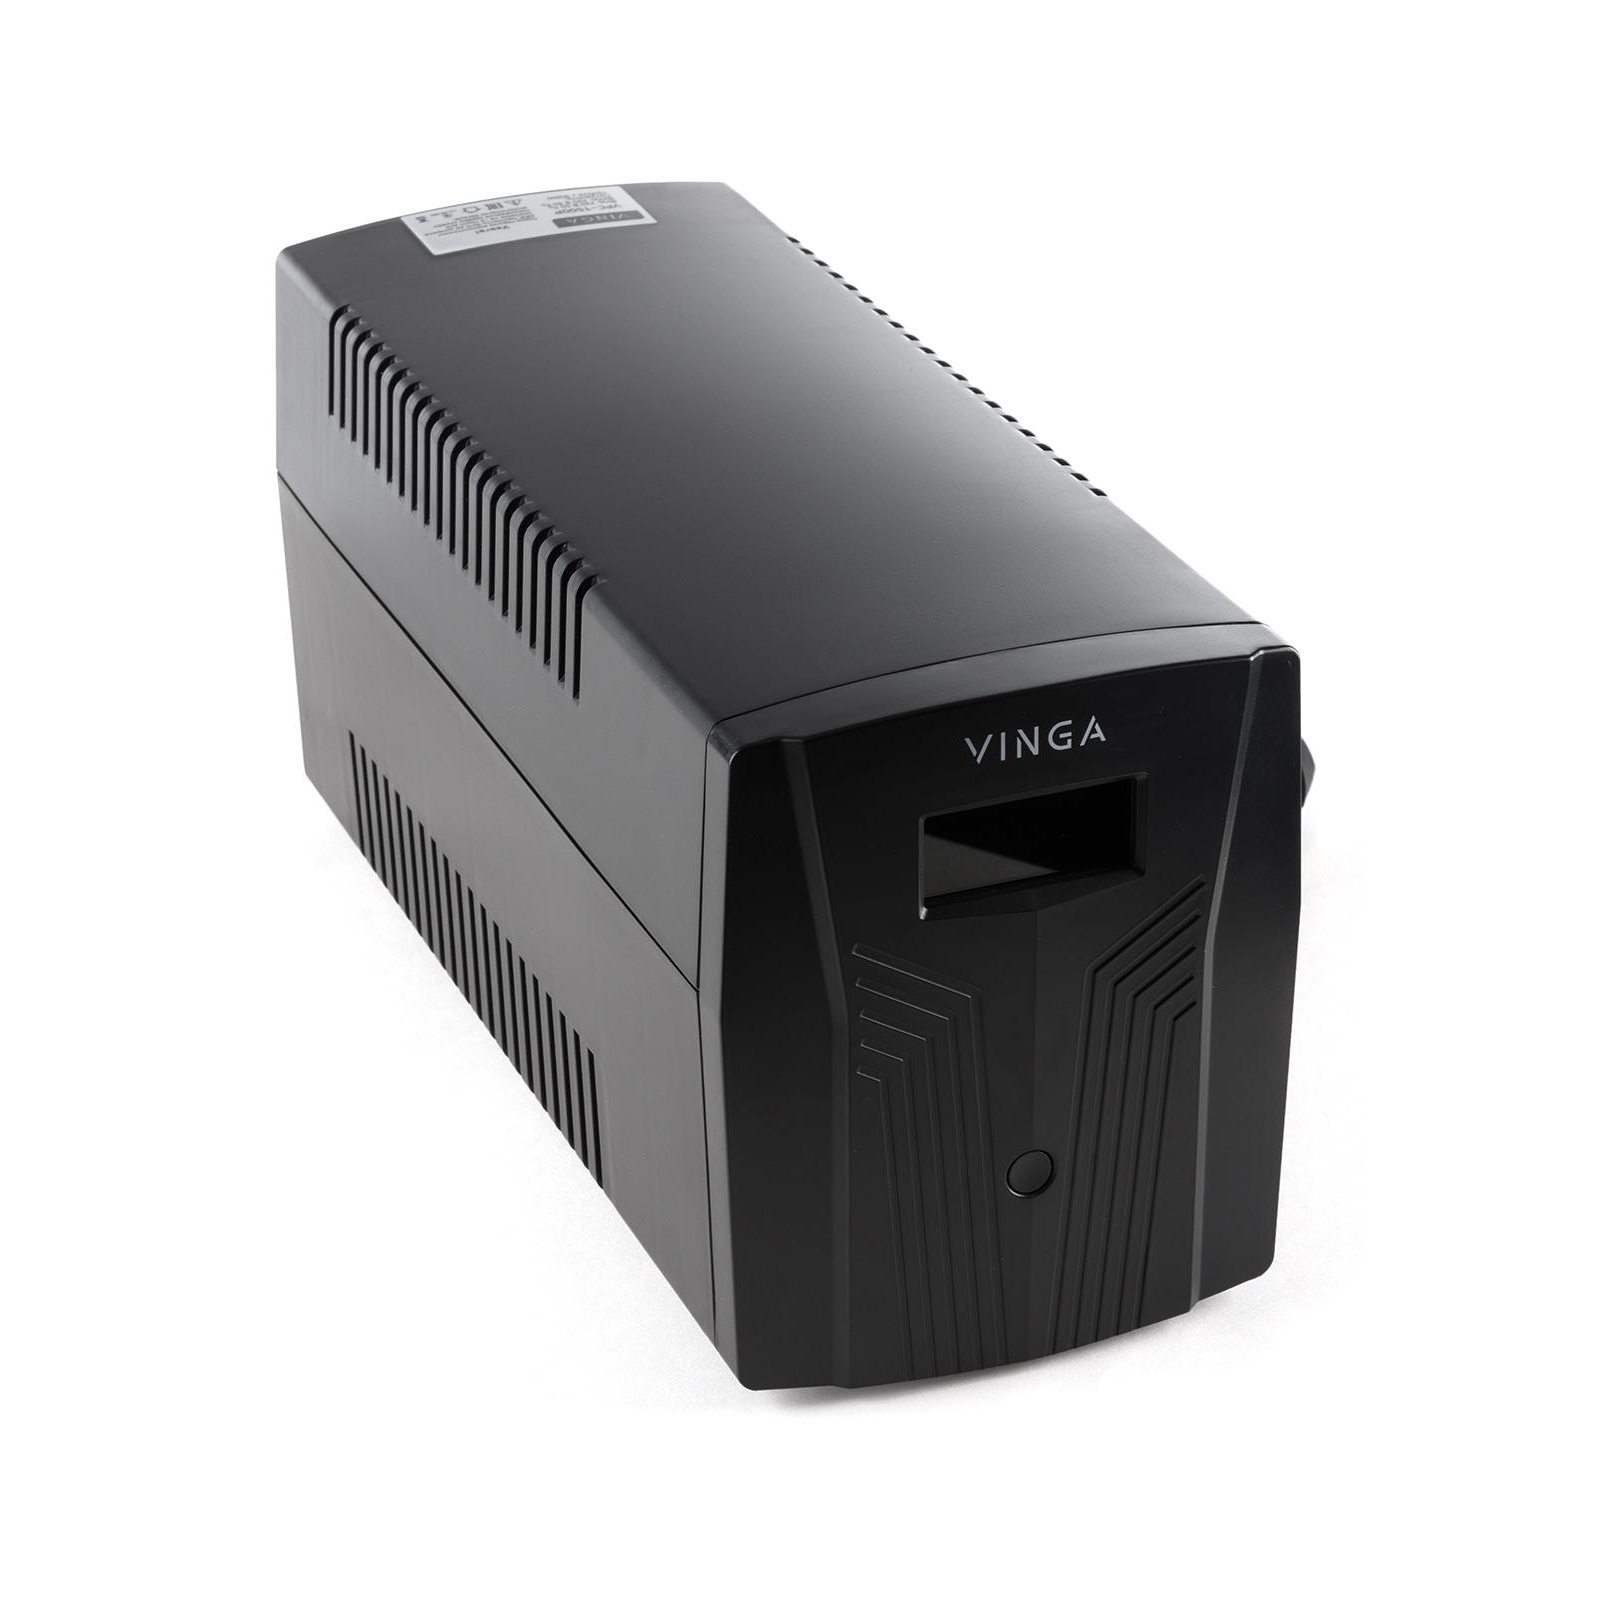 Источник бесперебойного питания Vinga LCD 1200VA plastic case with USB (VPC-1200PU) изображение 9